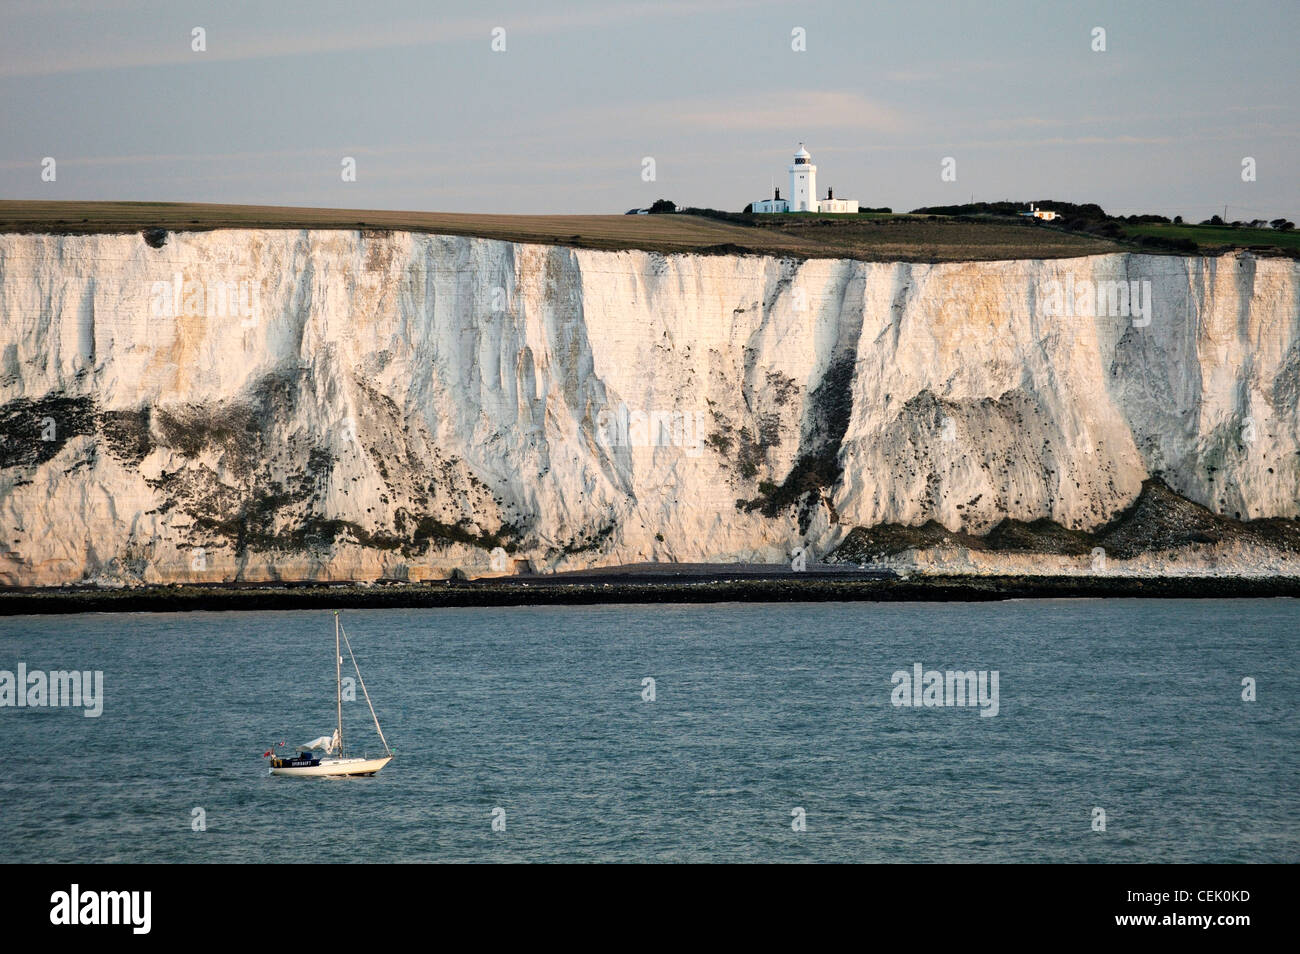 Yacht, vorbei an den Kreidefelsen von Dover in den Ärmelkanal östlich Dover unter South Foreland Leuchtturm. Dämmerlicht Stockfoto